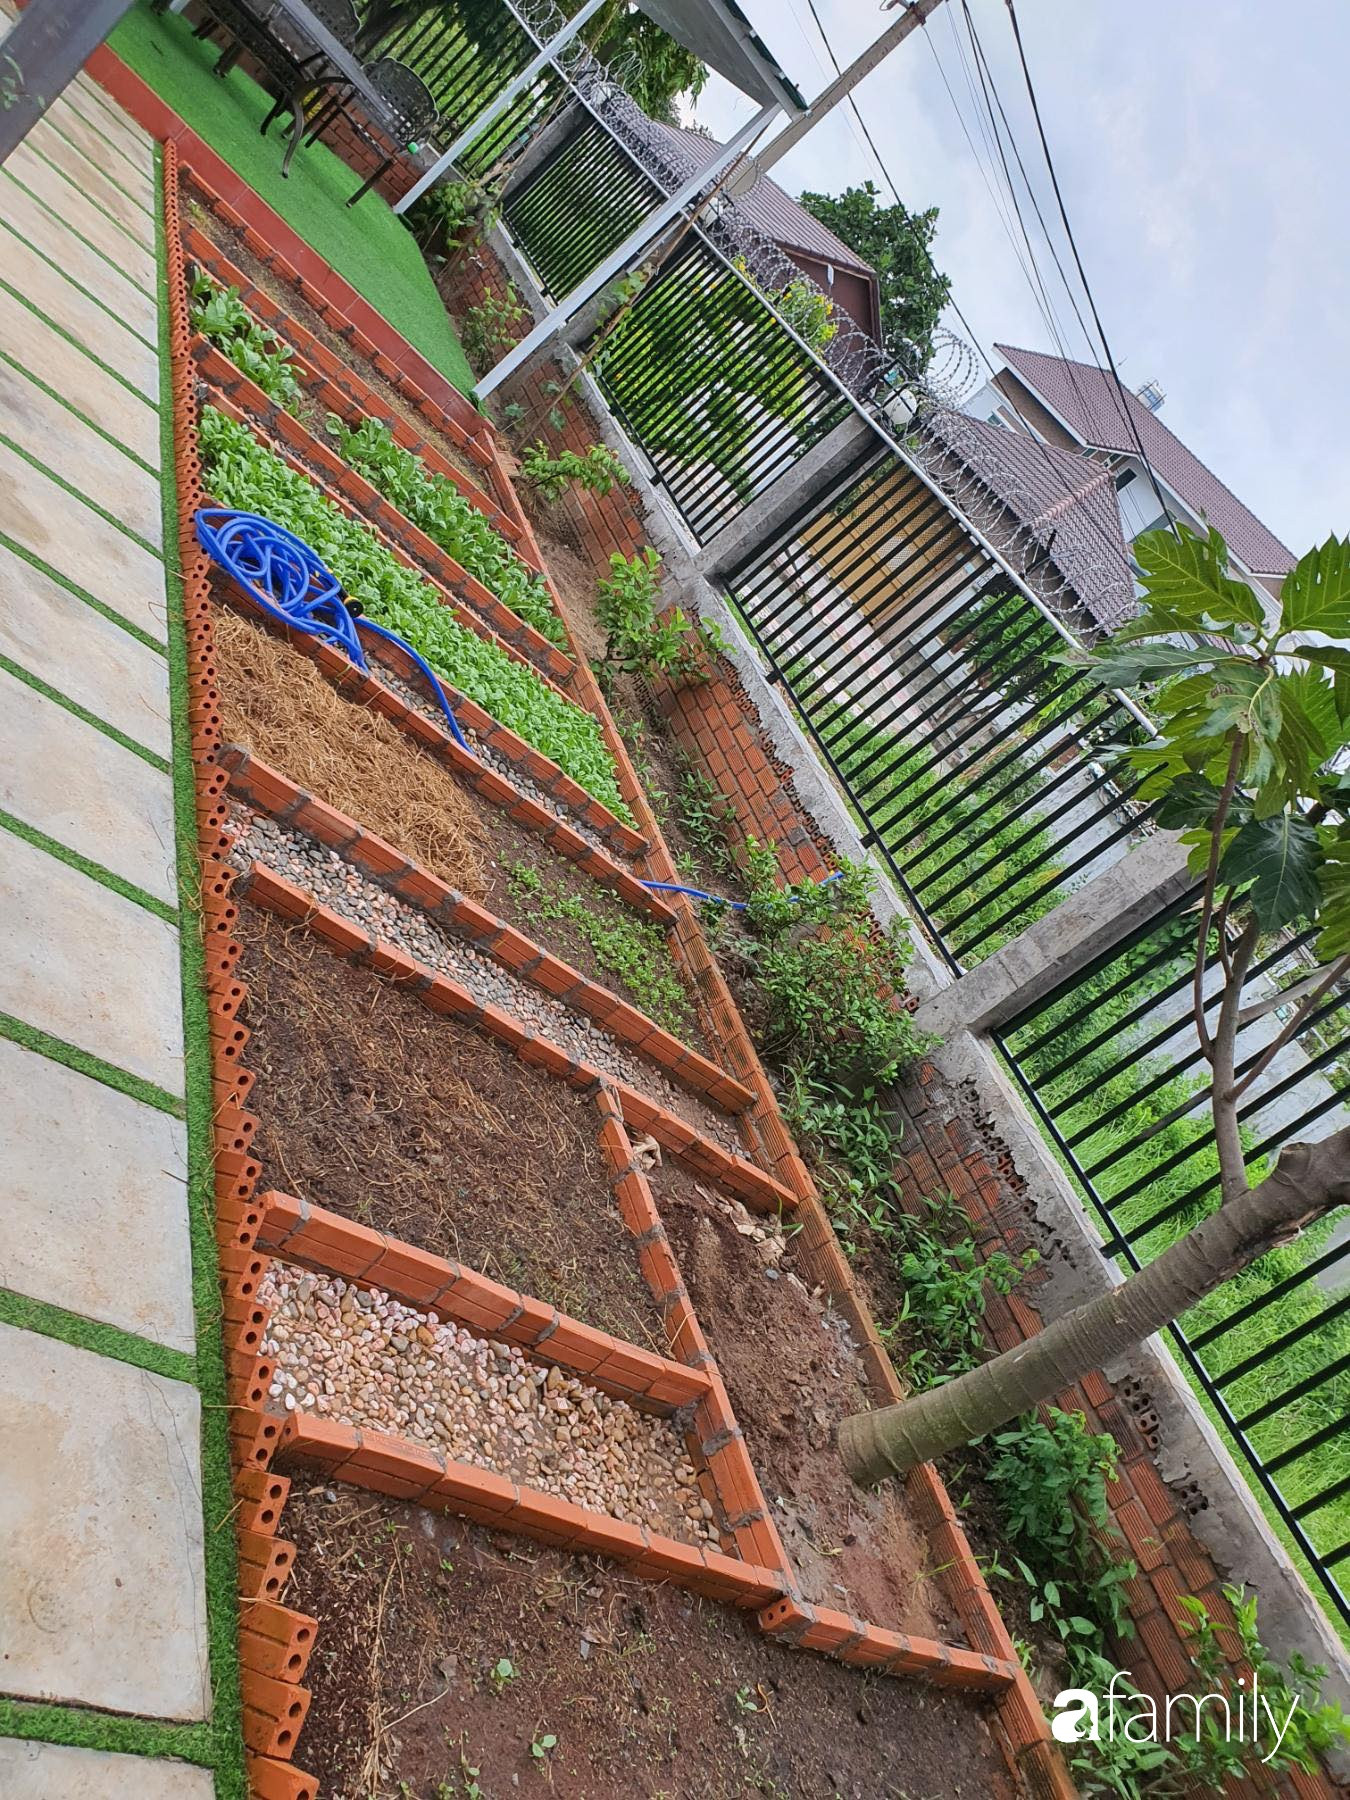 Con gái chi 500 triệu đồng xây nhà vườn container để bố về hưu thỏa mãn đam mê trồng rau ở Sài Gòn - Ảnh 12.